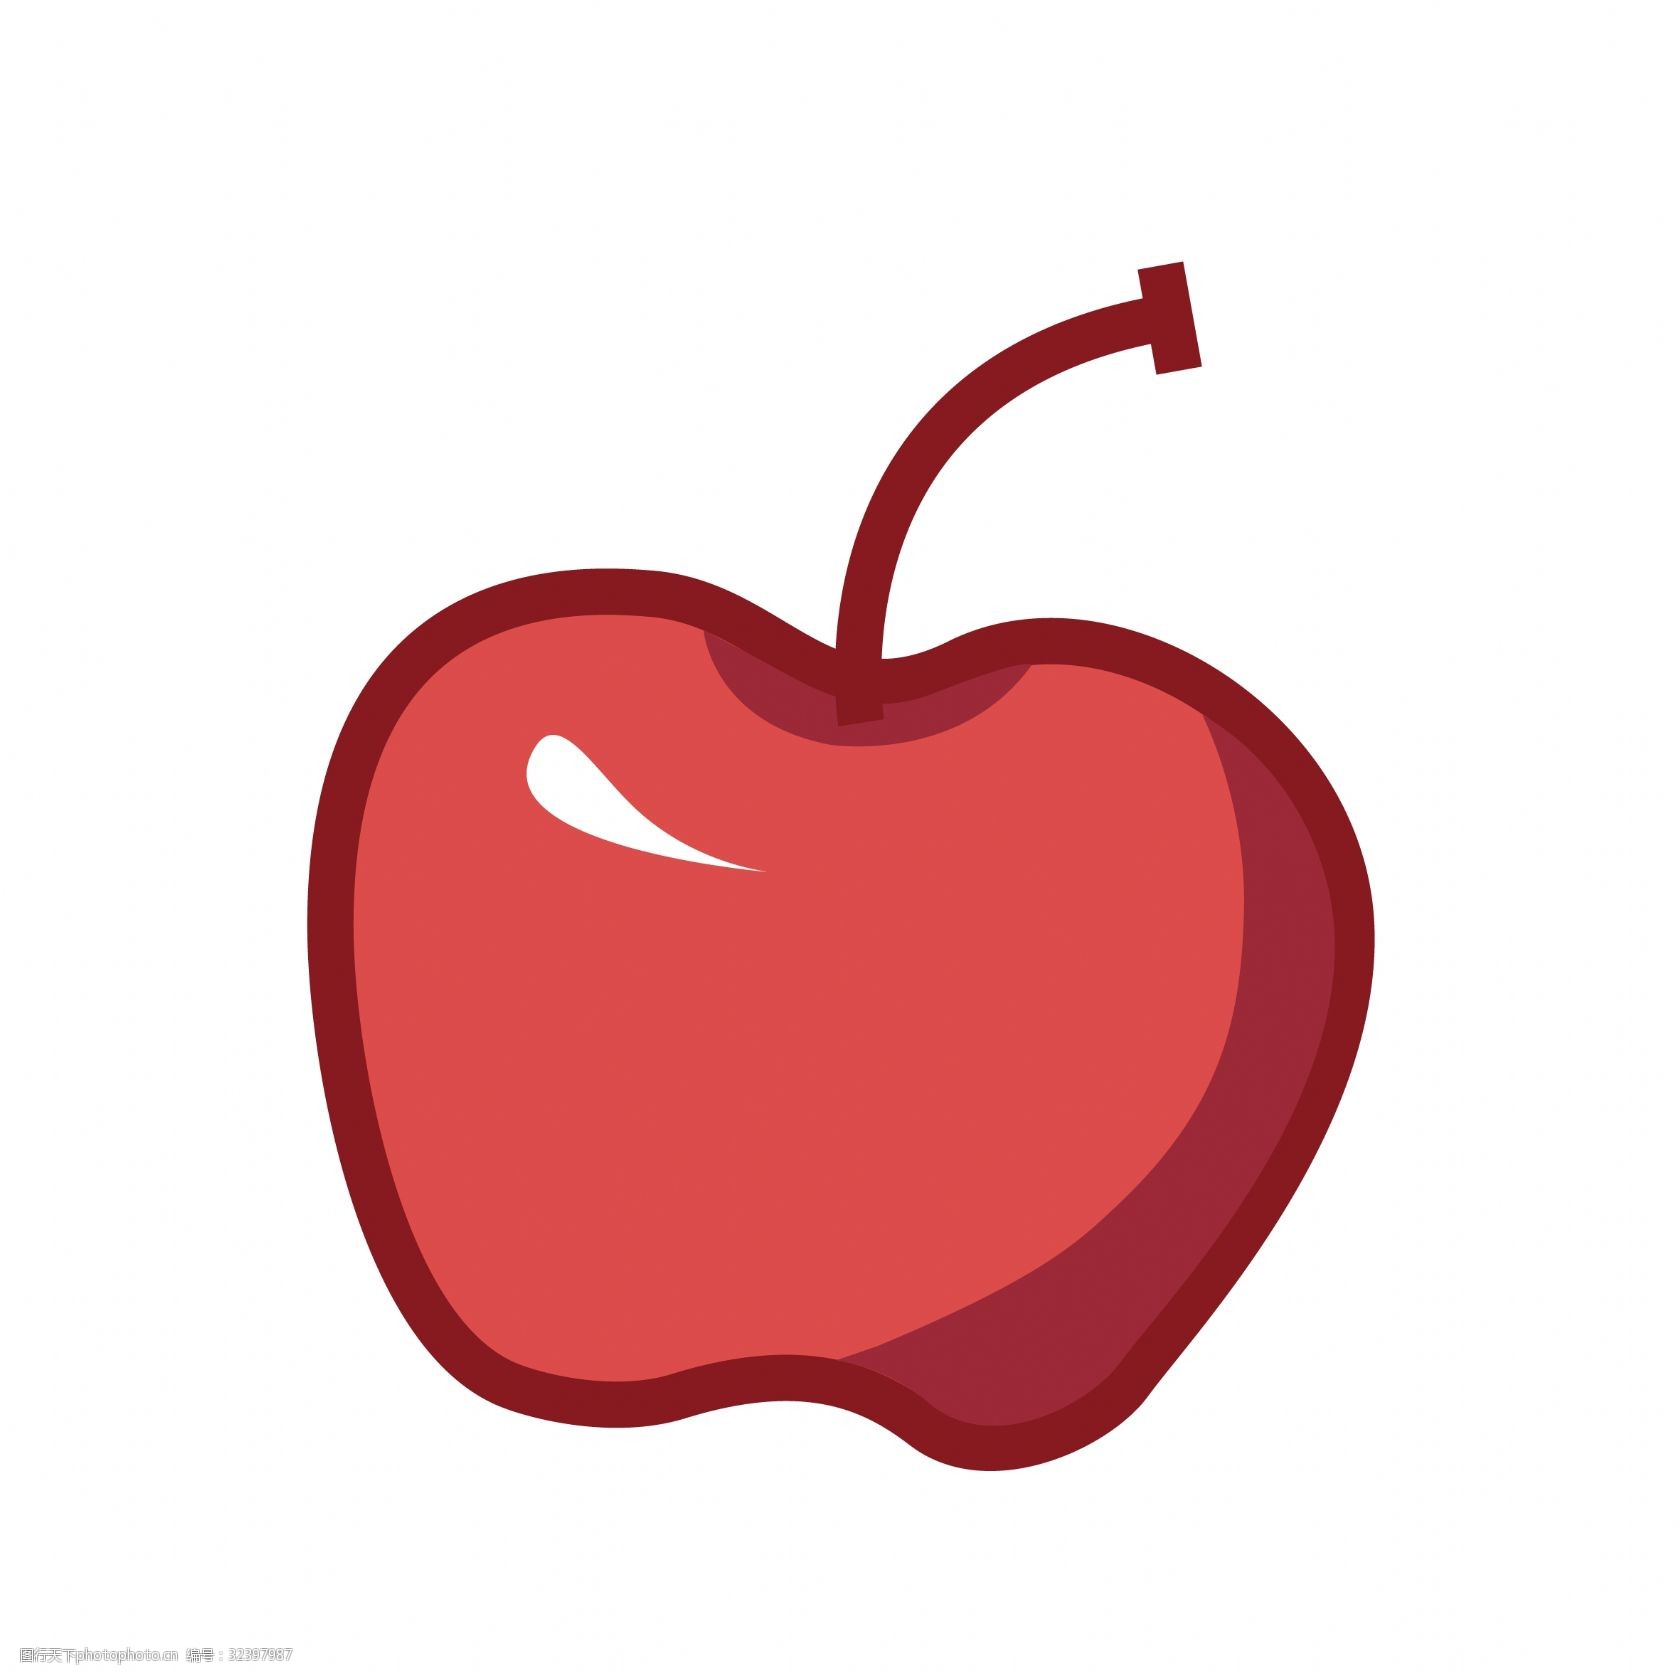 关键词:矢量图红色的小苹果 矢量图 彩色 水果 营养 卡通创意 抽象